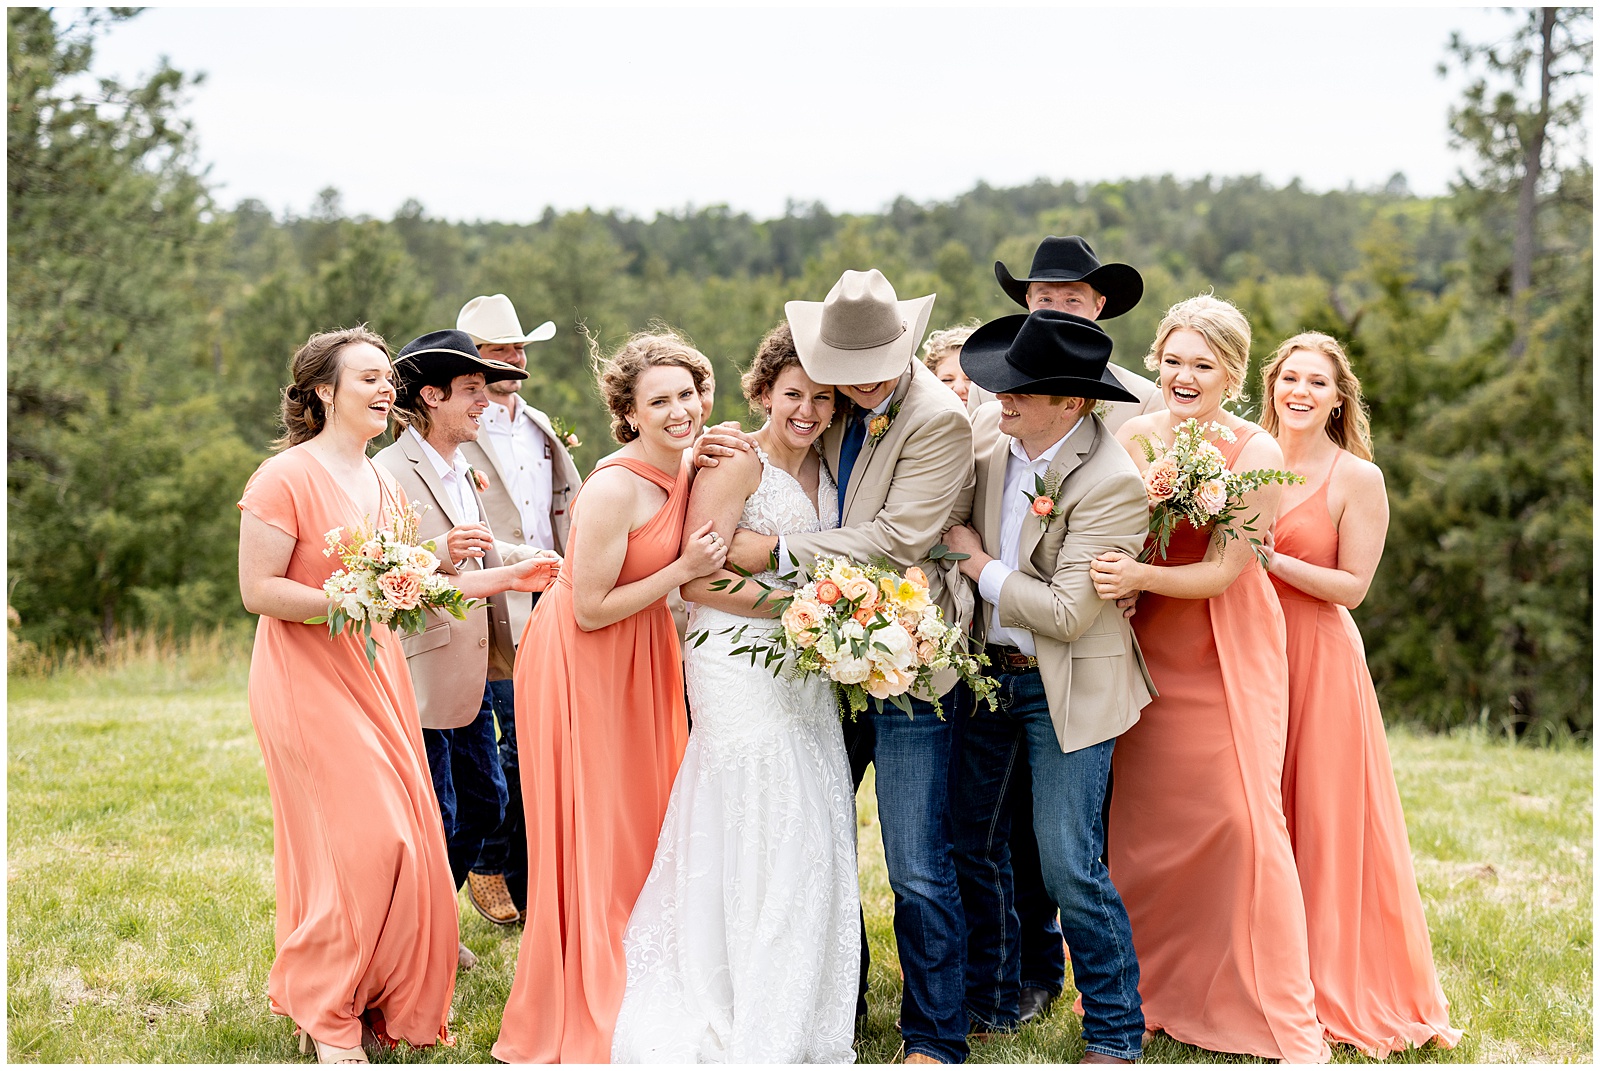 Country Wedding,Nebraska Country Wedding,Nebraska Farm Wedding,Nebraska Ranch Wedding,Nebraska Wedding,Nebraska Wedding Photographer,